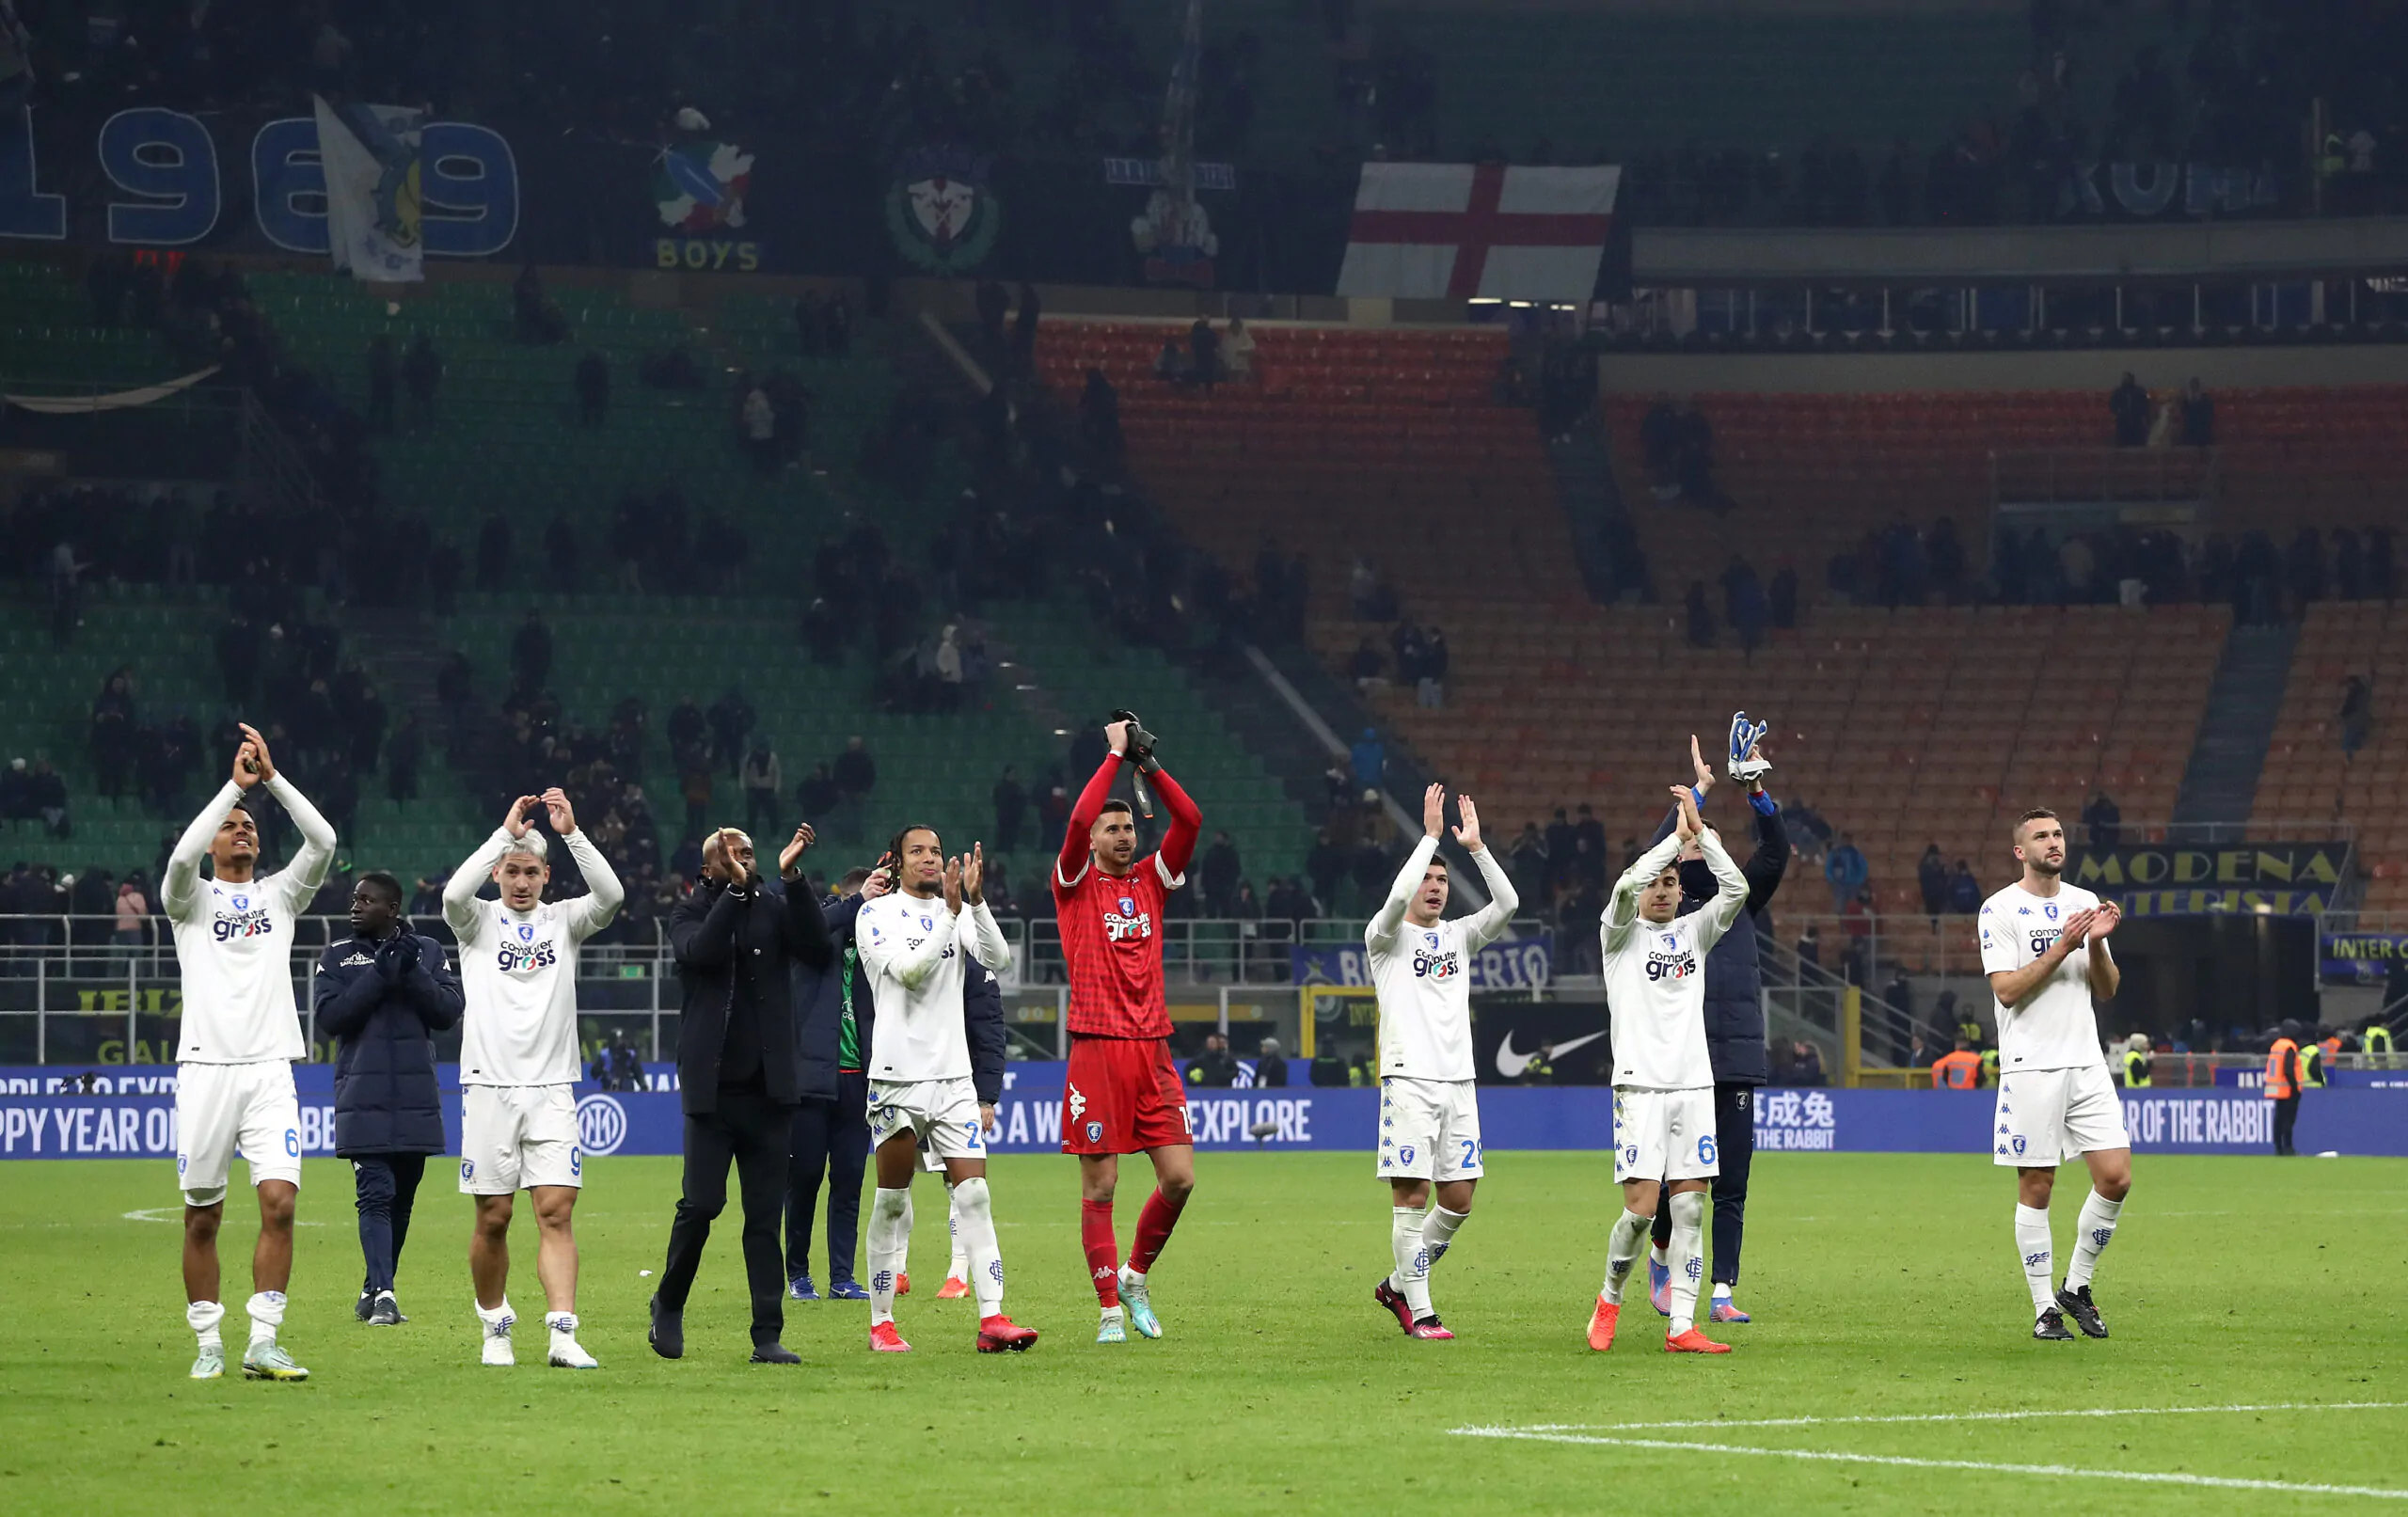 Inter sconfitta dall’Empoli, si riaccendono le speranze europee per la Juventus? La classifica aggiornata